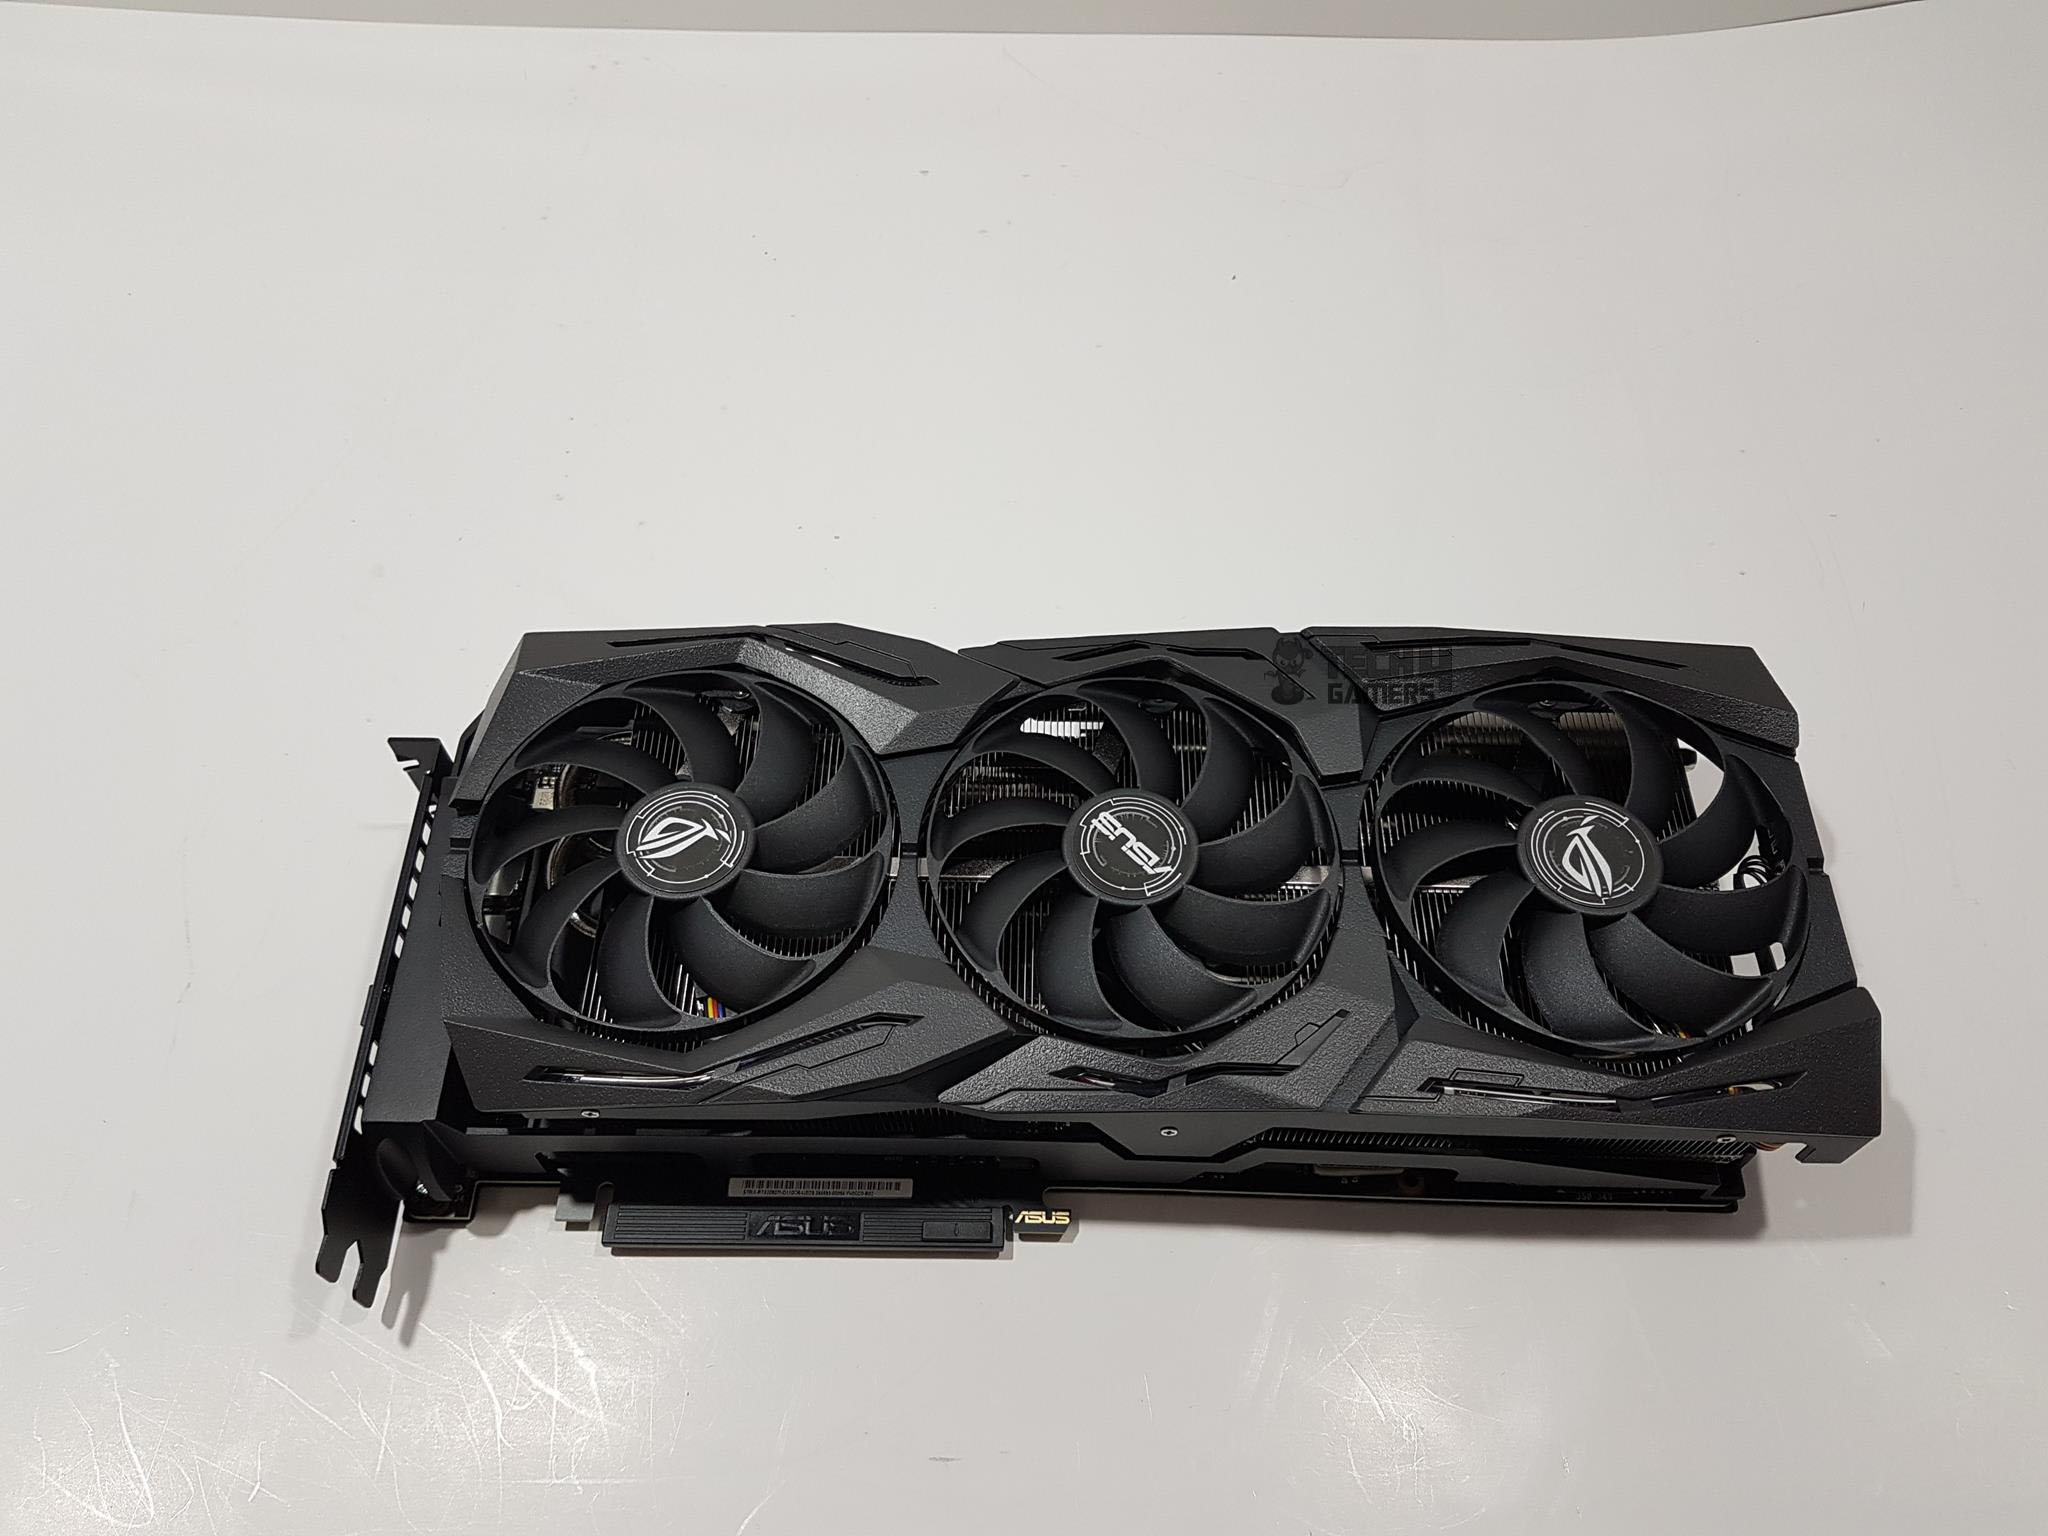 The GPU in all its glory